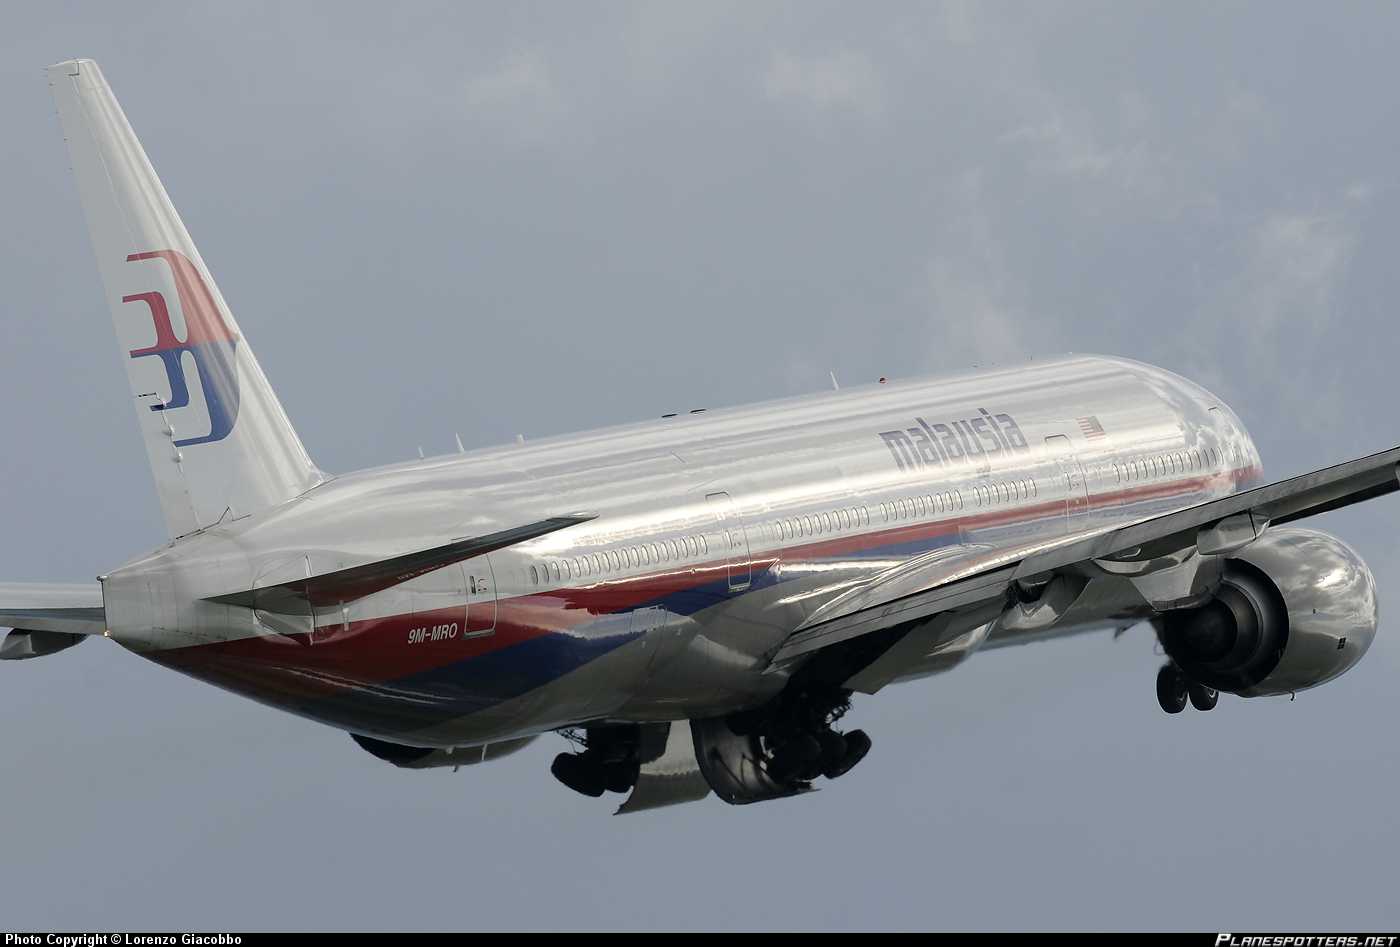 Aereo scomparso MH370 Malaysian Airlines: i cellulari di alcuni passeggeri squillavano a vuoto